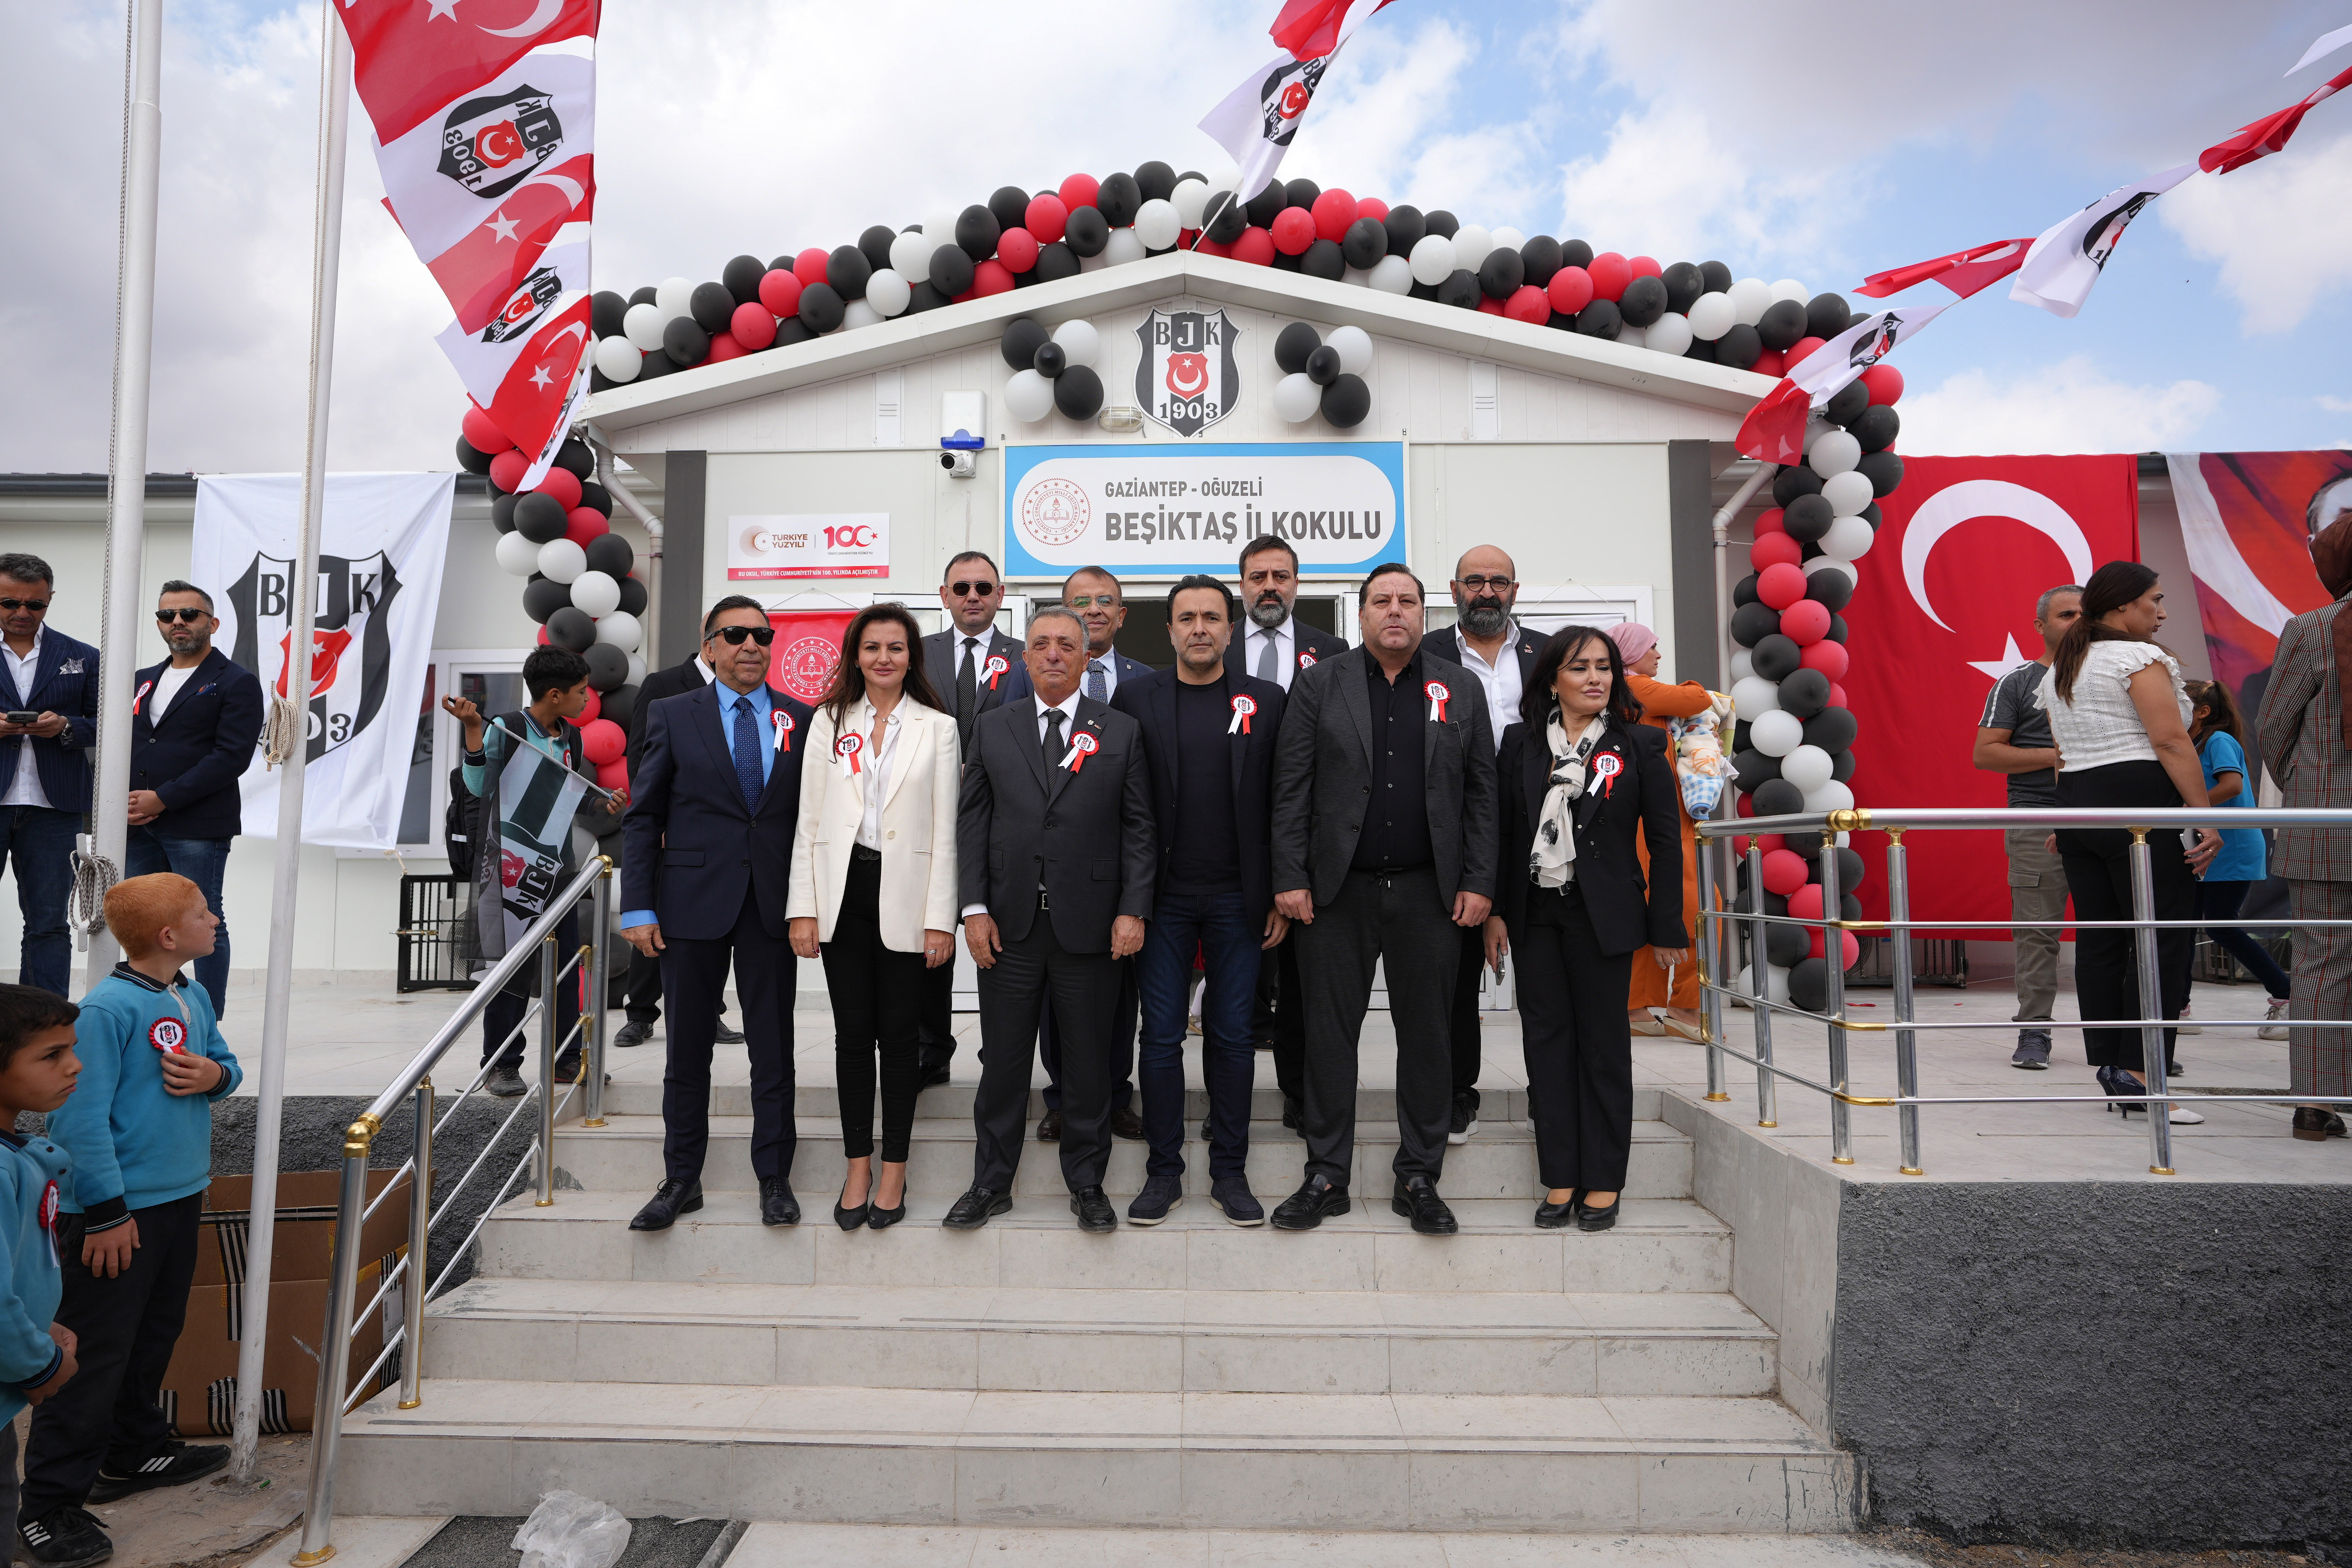 Beşiktaş Başkanı Çebi, Gaziantep’te Beşiktaş İlkokulunun açılışına katıldı